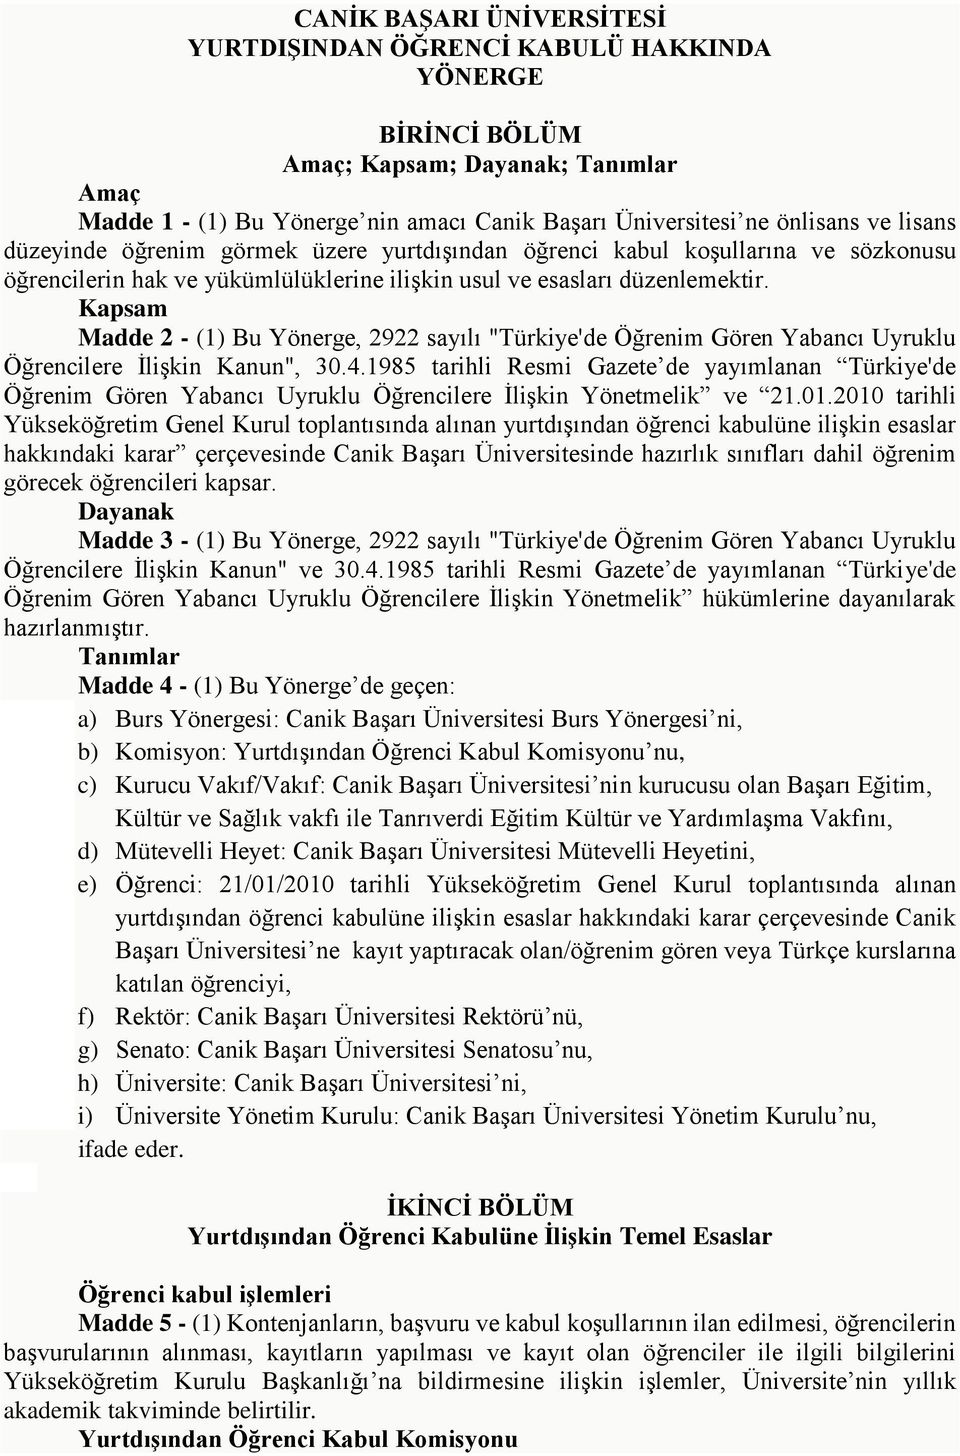 Kapsam Madde 2 - (1) Bu Yönerge, 2922 sayılı "Türkiye'de Öğrenim Gören Yabancı Uyruklu Öğrencilere İlişkin Kanun", 30.4.